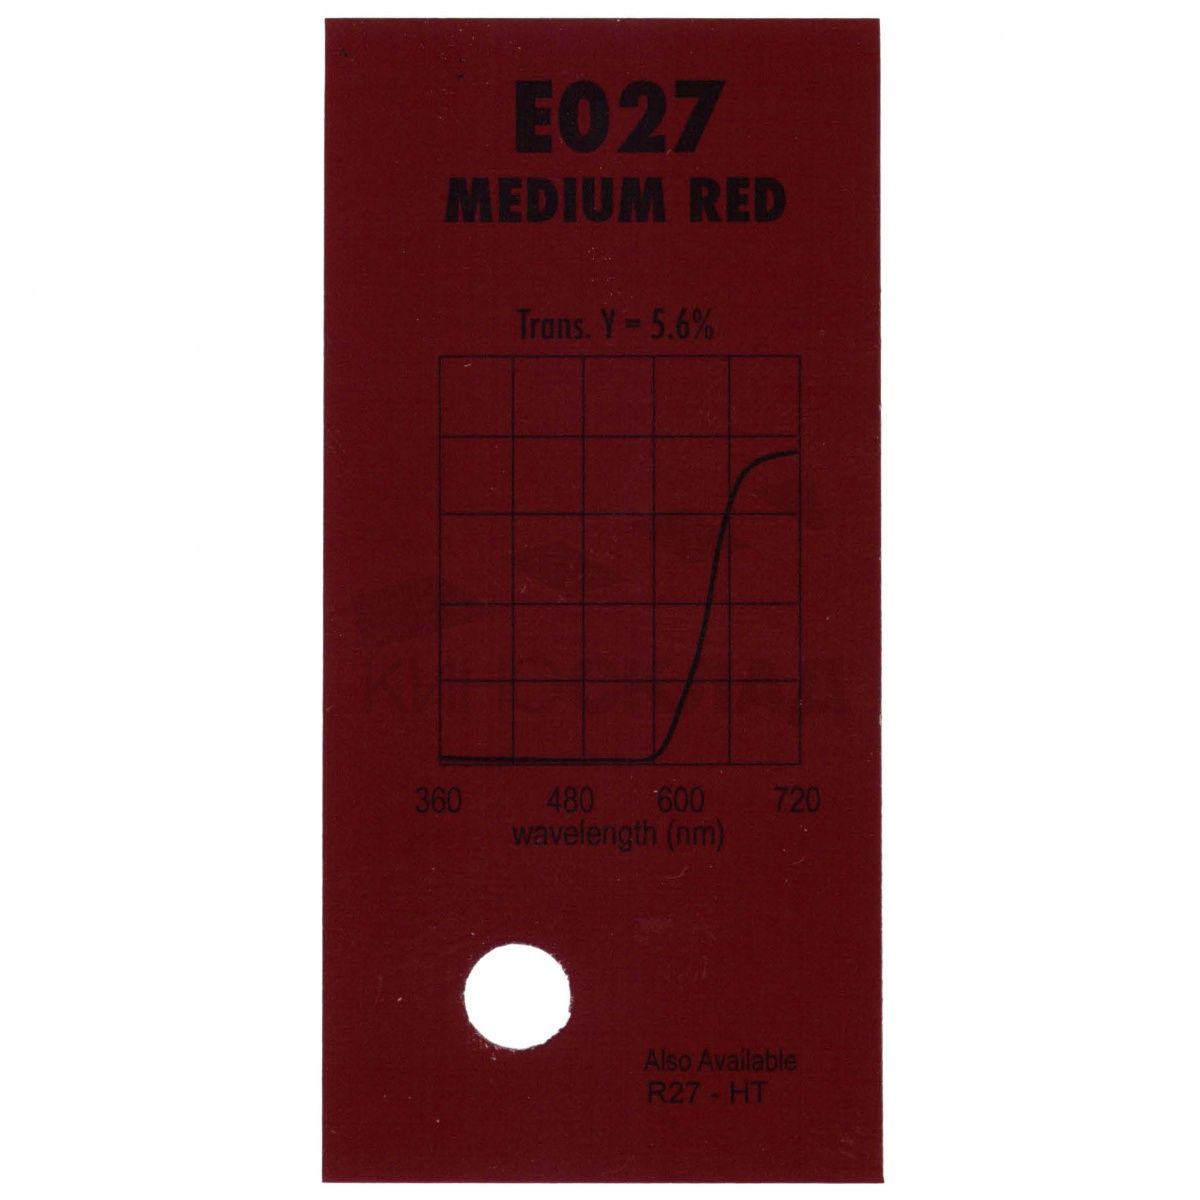 Детальная картинка товара LEE Filters # 027 Medium Red в магазине Музыкальная Тема